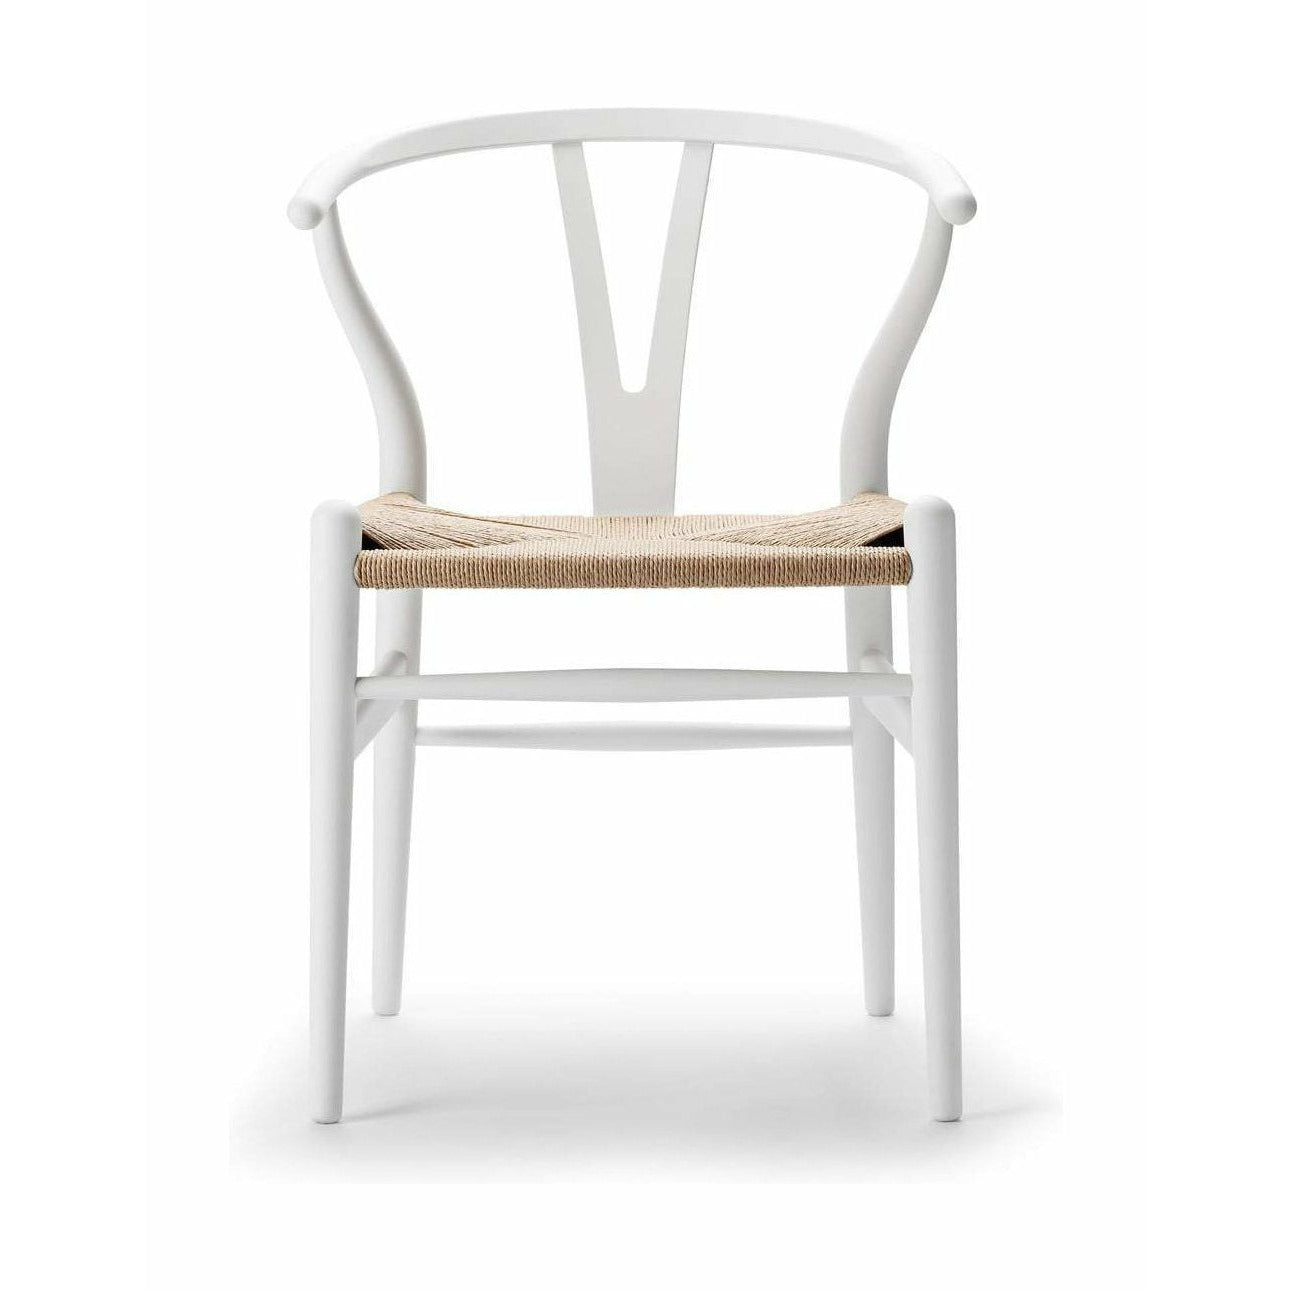 Carl Hansen CH24 Wishbone krzesło specjalne, edycja specjalna Beech, miękka biel